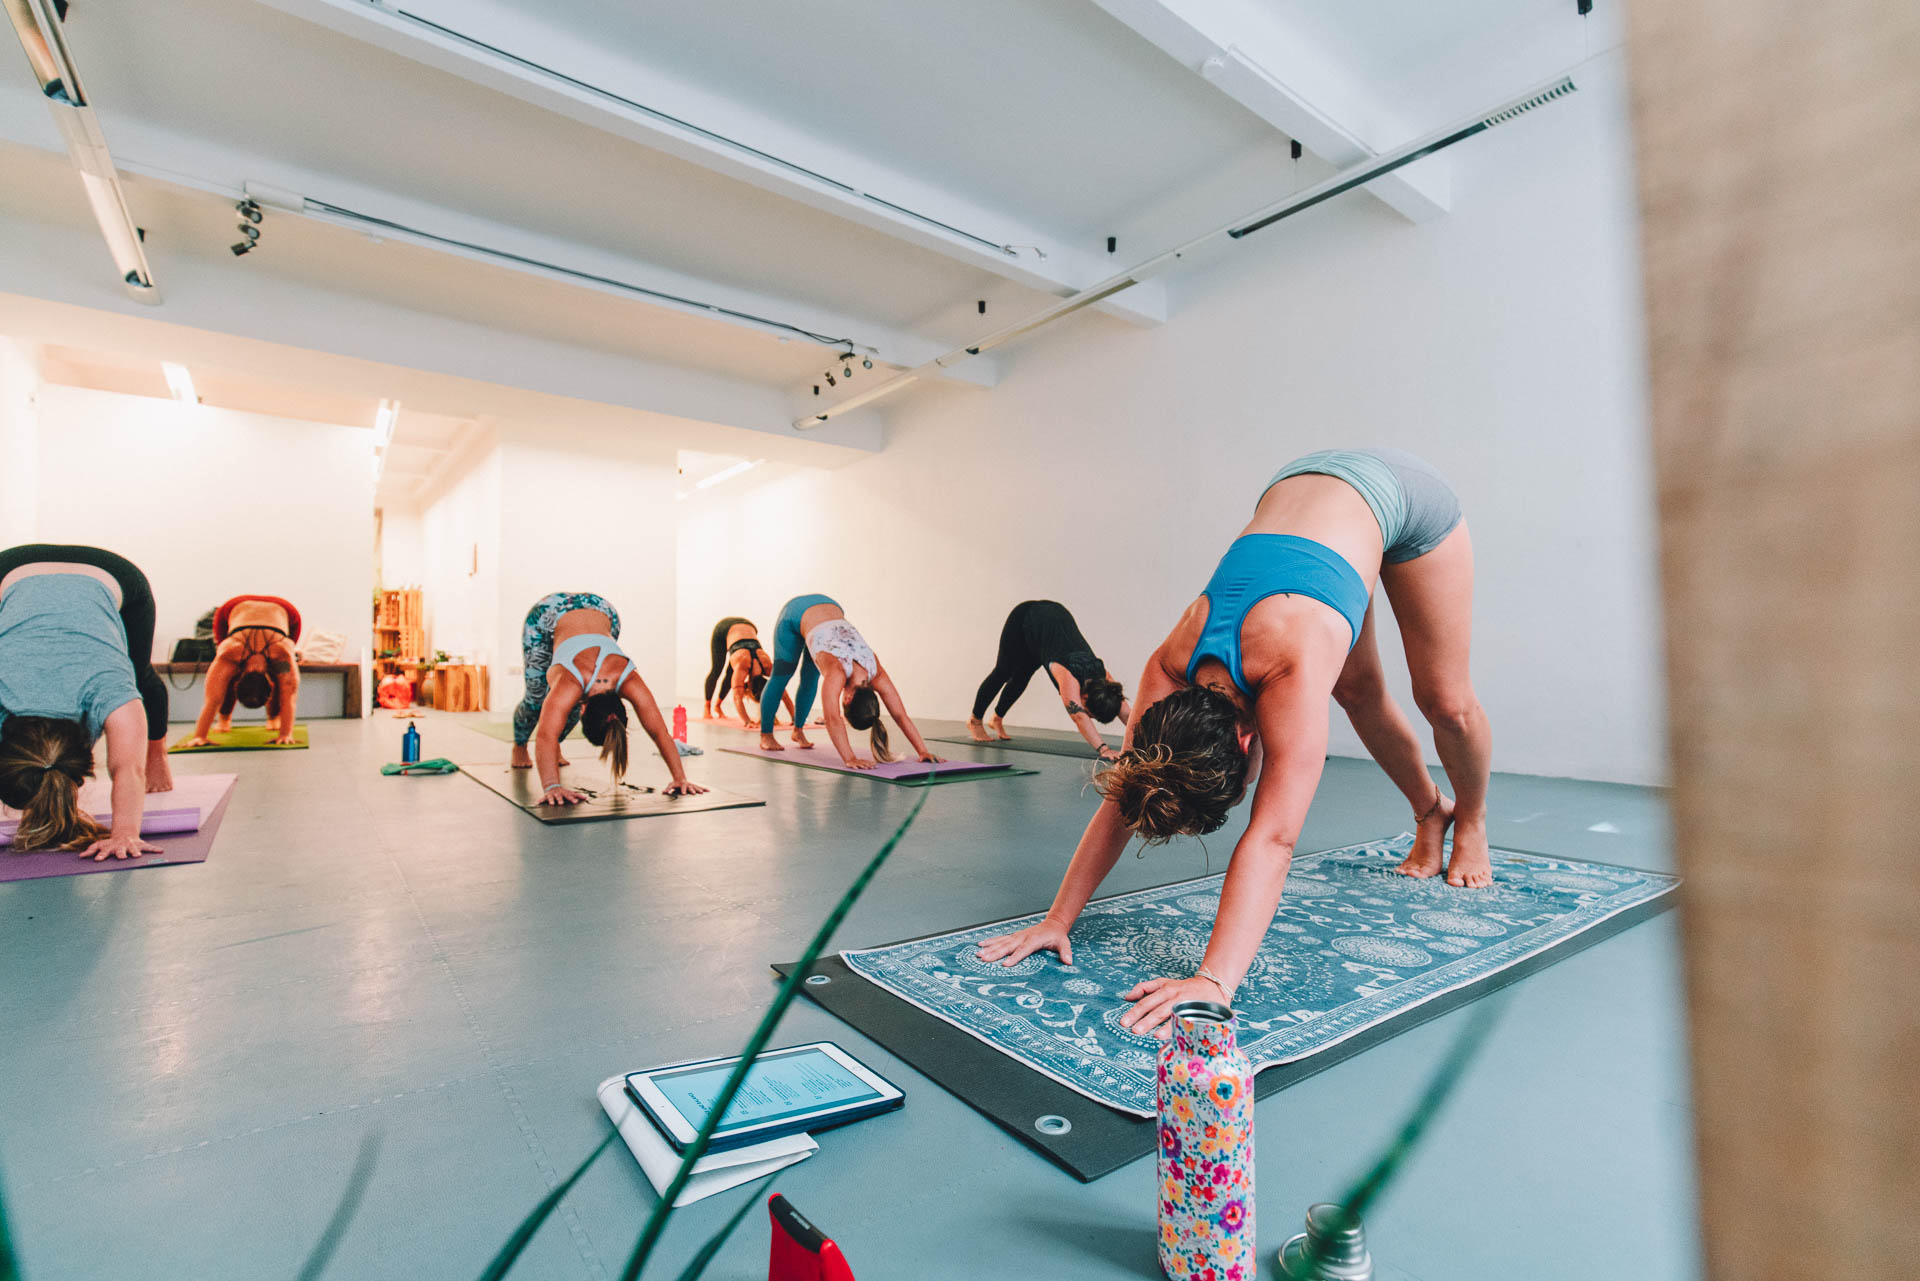 Frauen in einem Raum Yoga praktizierend